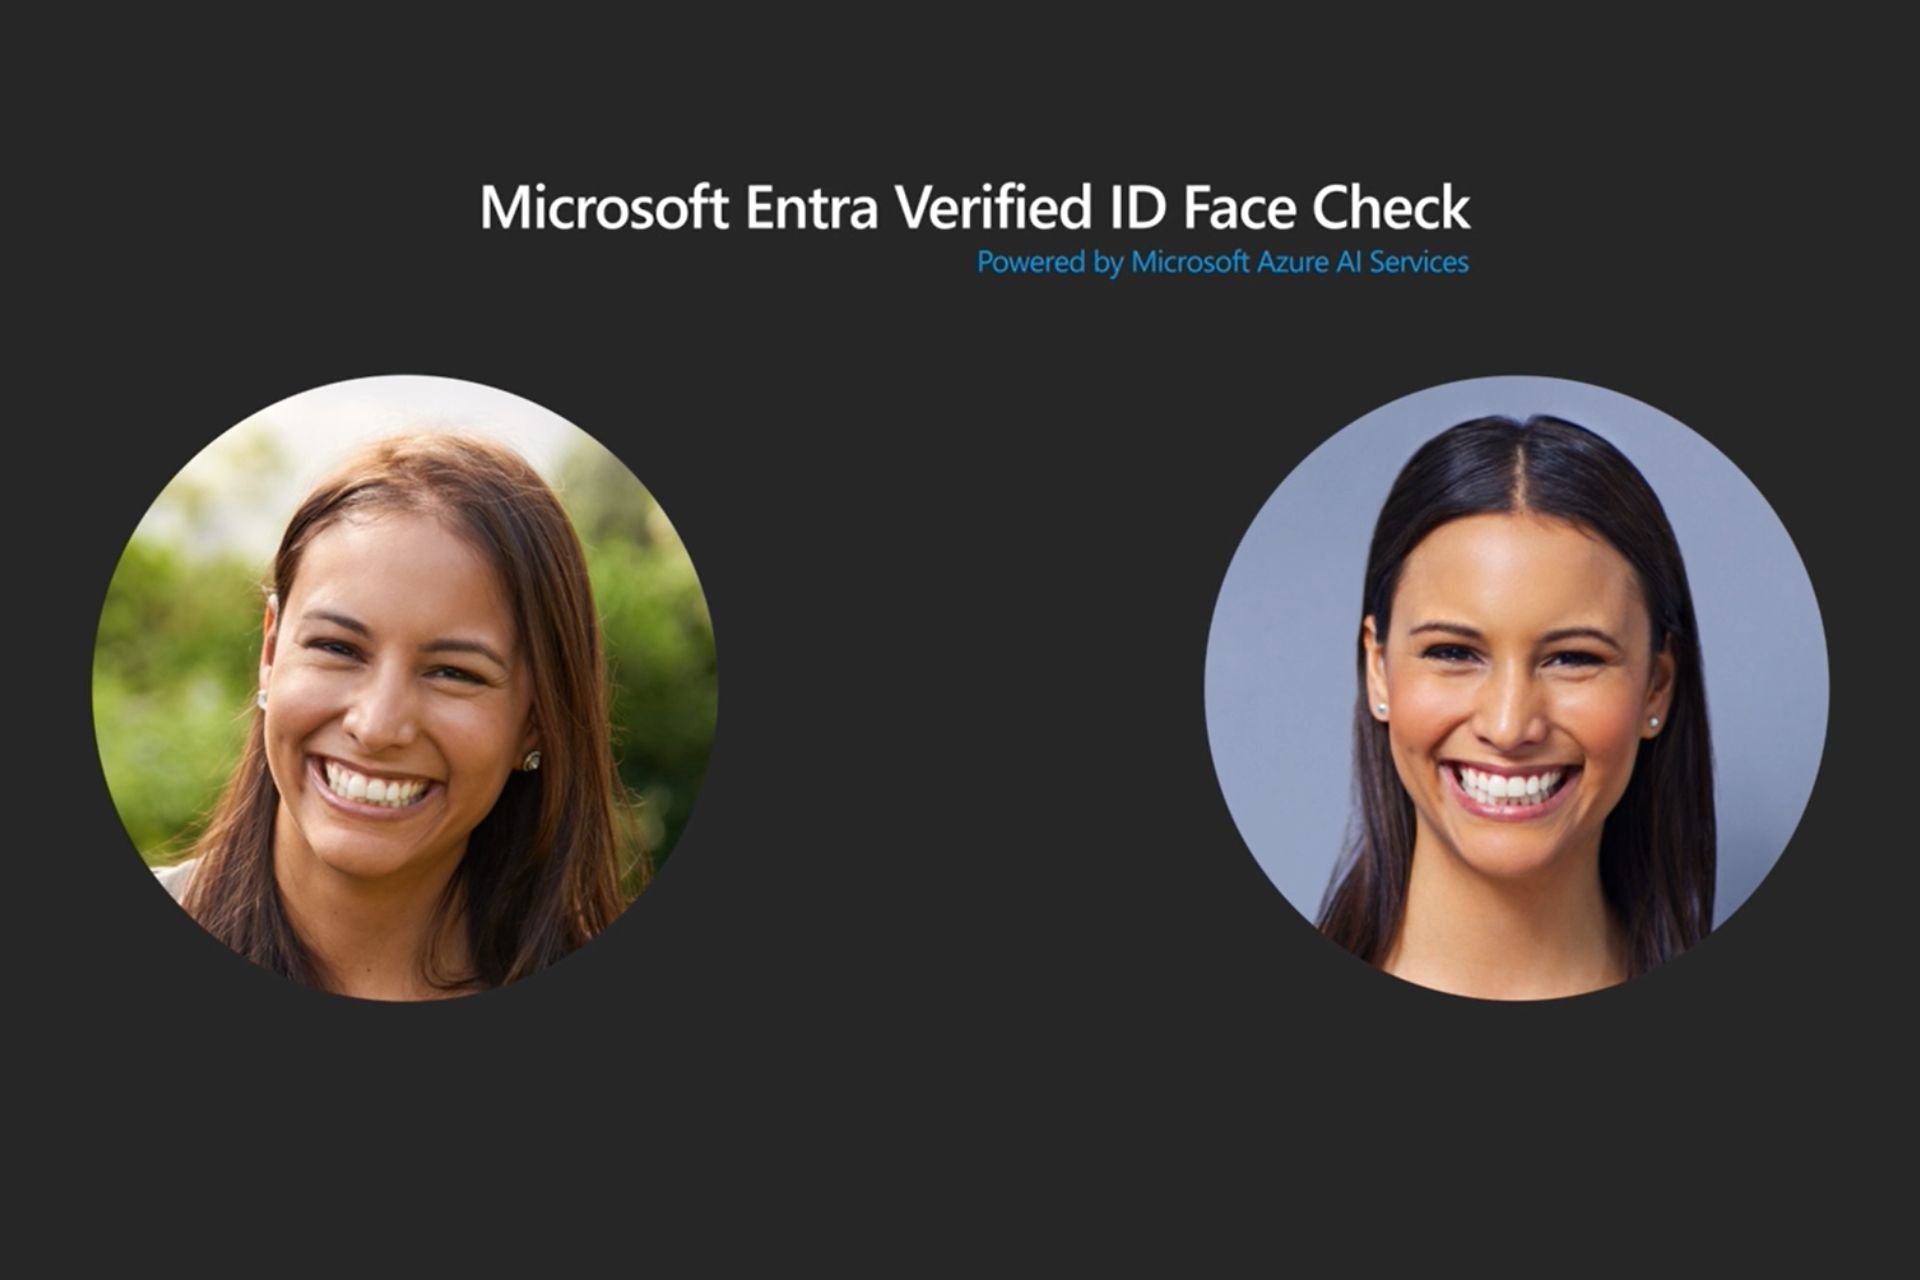 Microsoft Entra Face Check